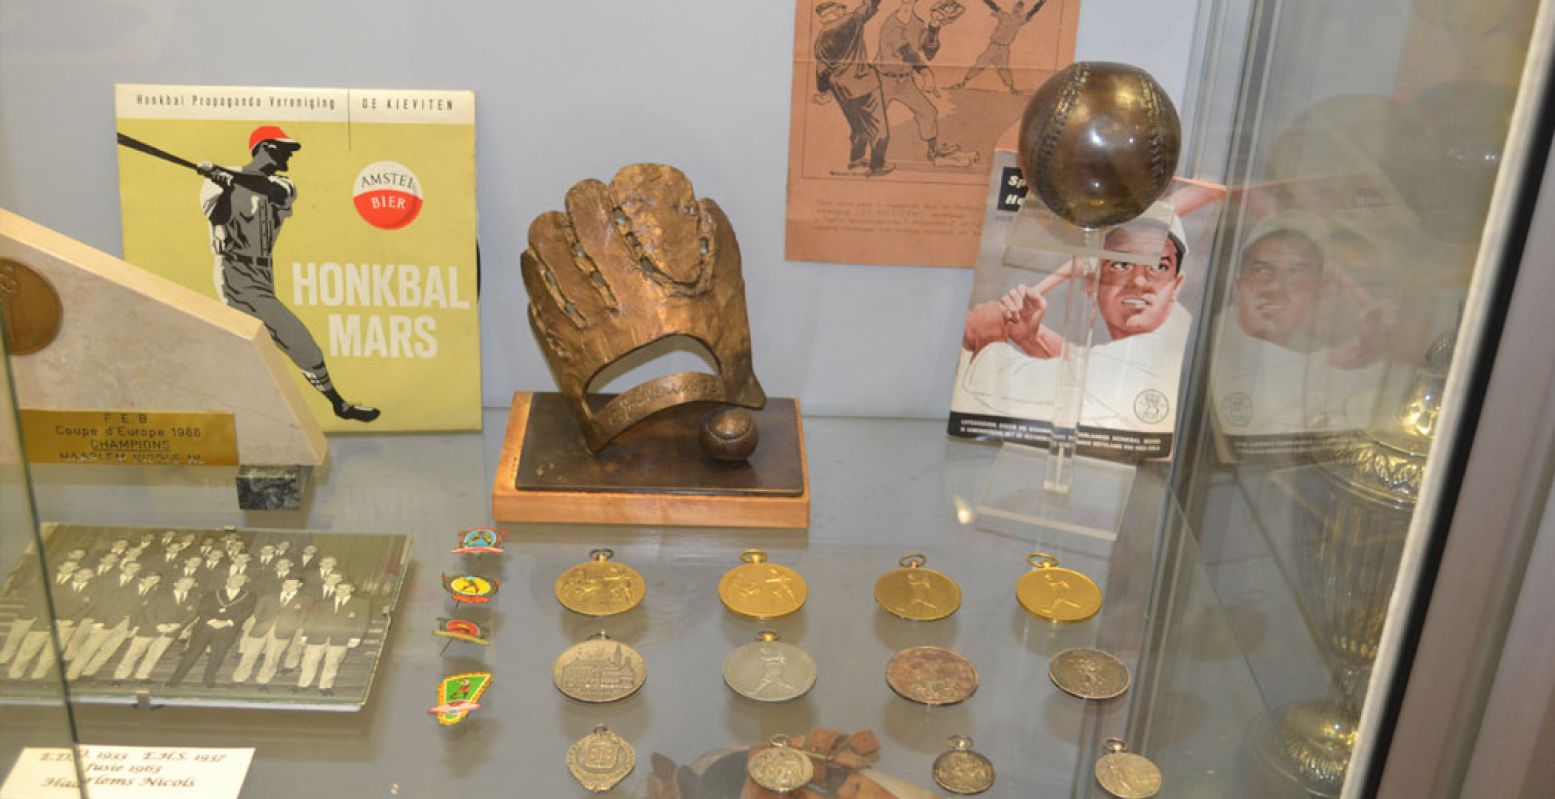 Ontdek de historie van de honkbalsport in het Honkbal en Softbal Museum, gevestigd in het Pim Mulier Stadion in Haarlem. Foto: Honkbal en Softbal Museum © James van de Merbel